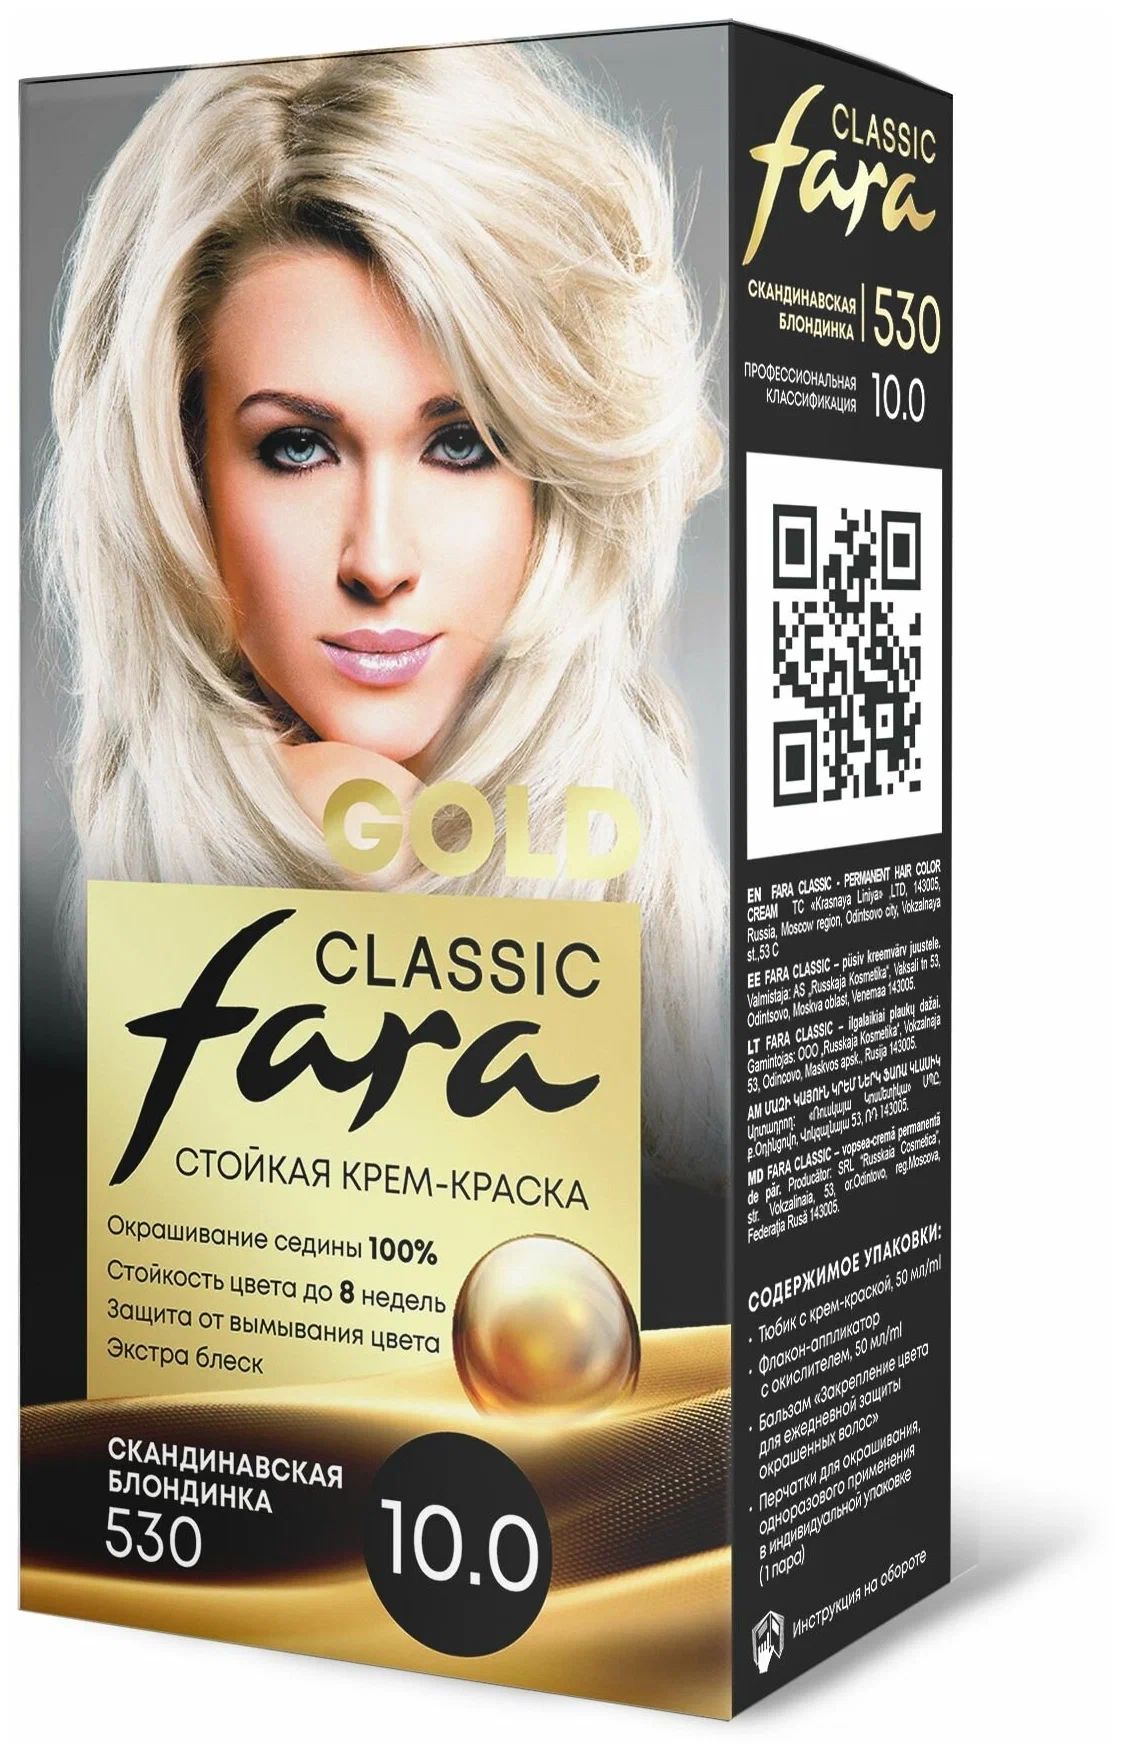 Крем-краска для волос Fara Classic Gold 530 скандинавская блондинка 10.0, 140 г